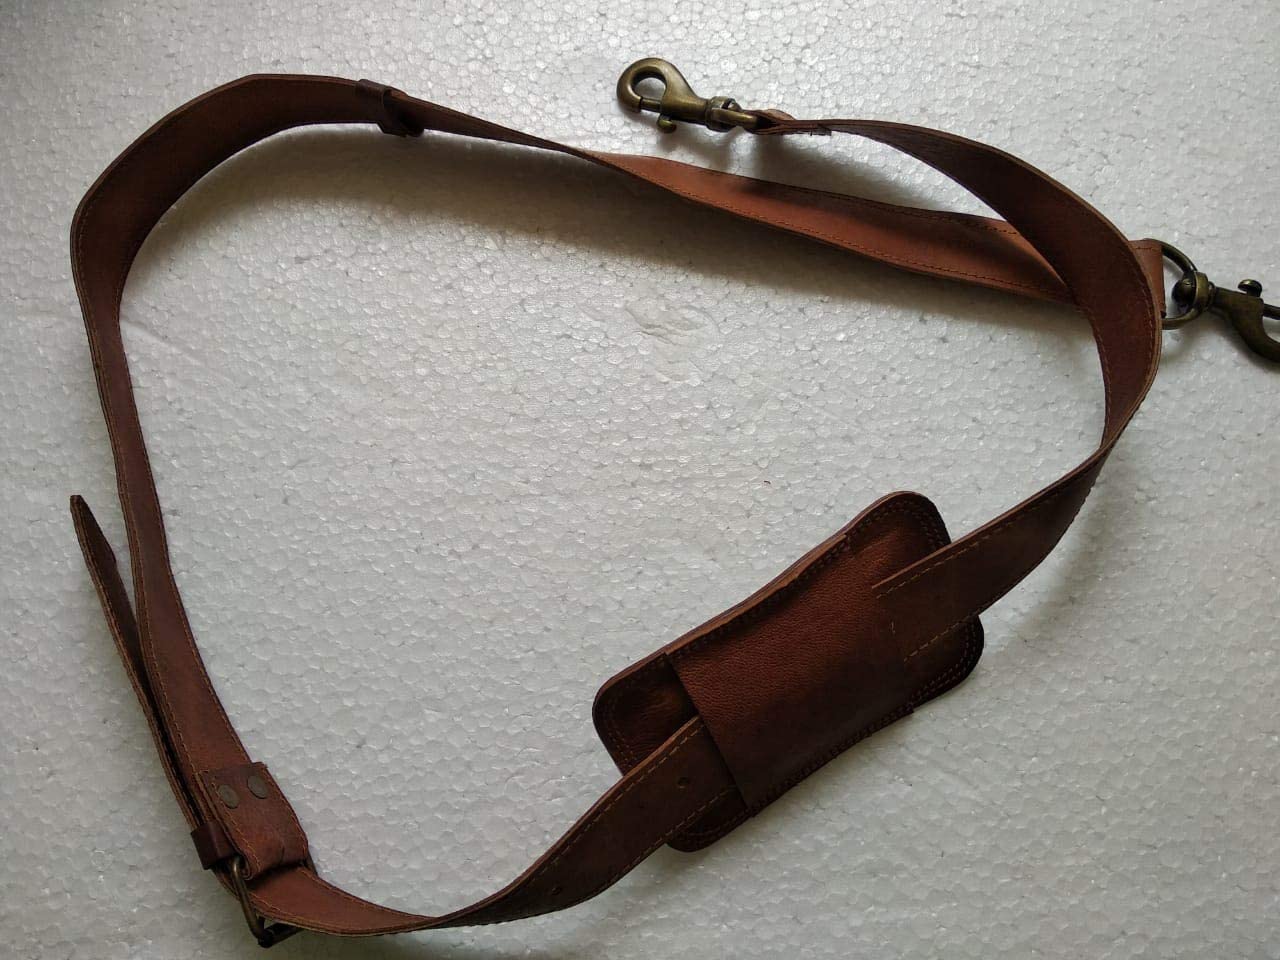 Bag Strap Leather Shoulder Strap Crossbody Strap with Metal Swivel Hooks  Adjustable Length Universal Purse Strap for Shoulder Bags Briefcase Dark